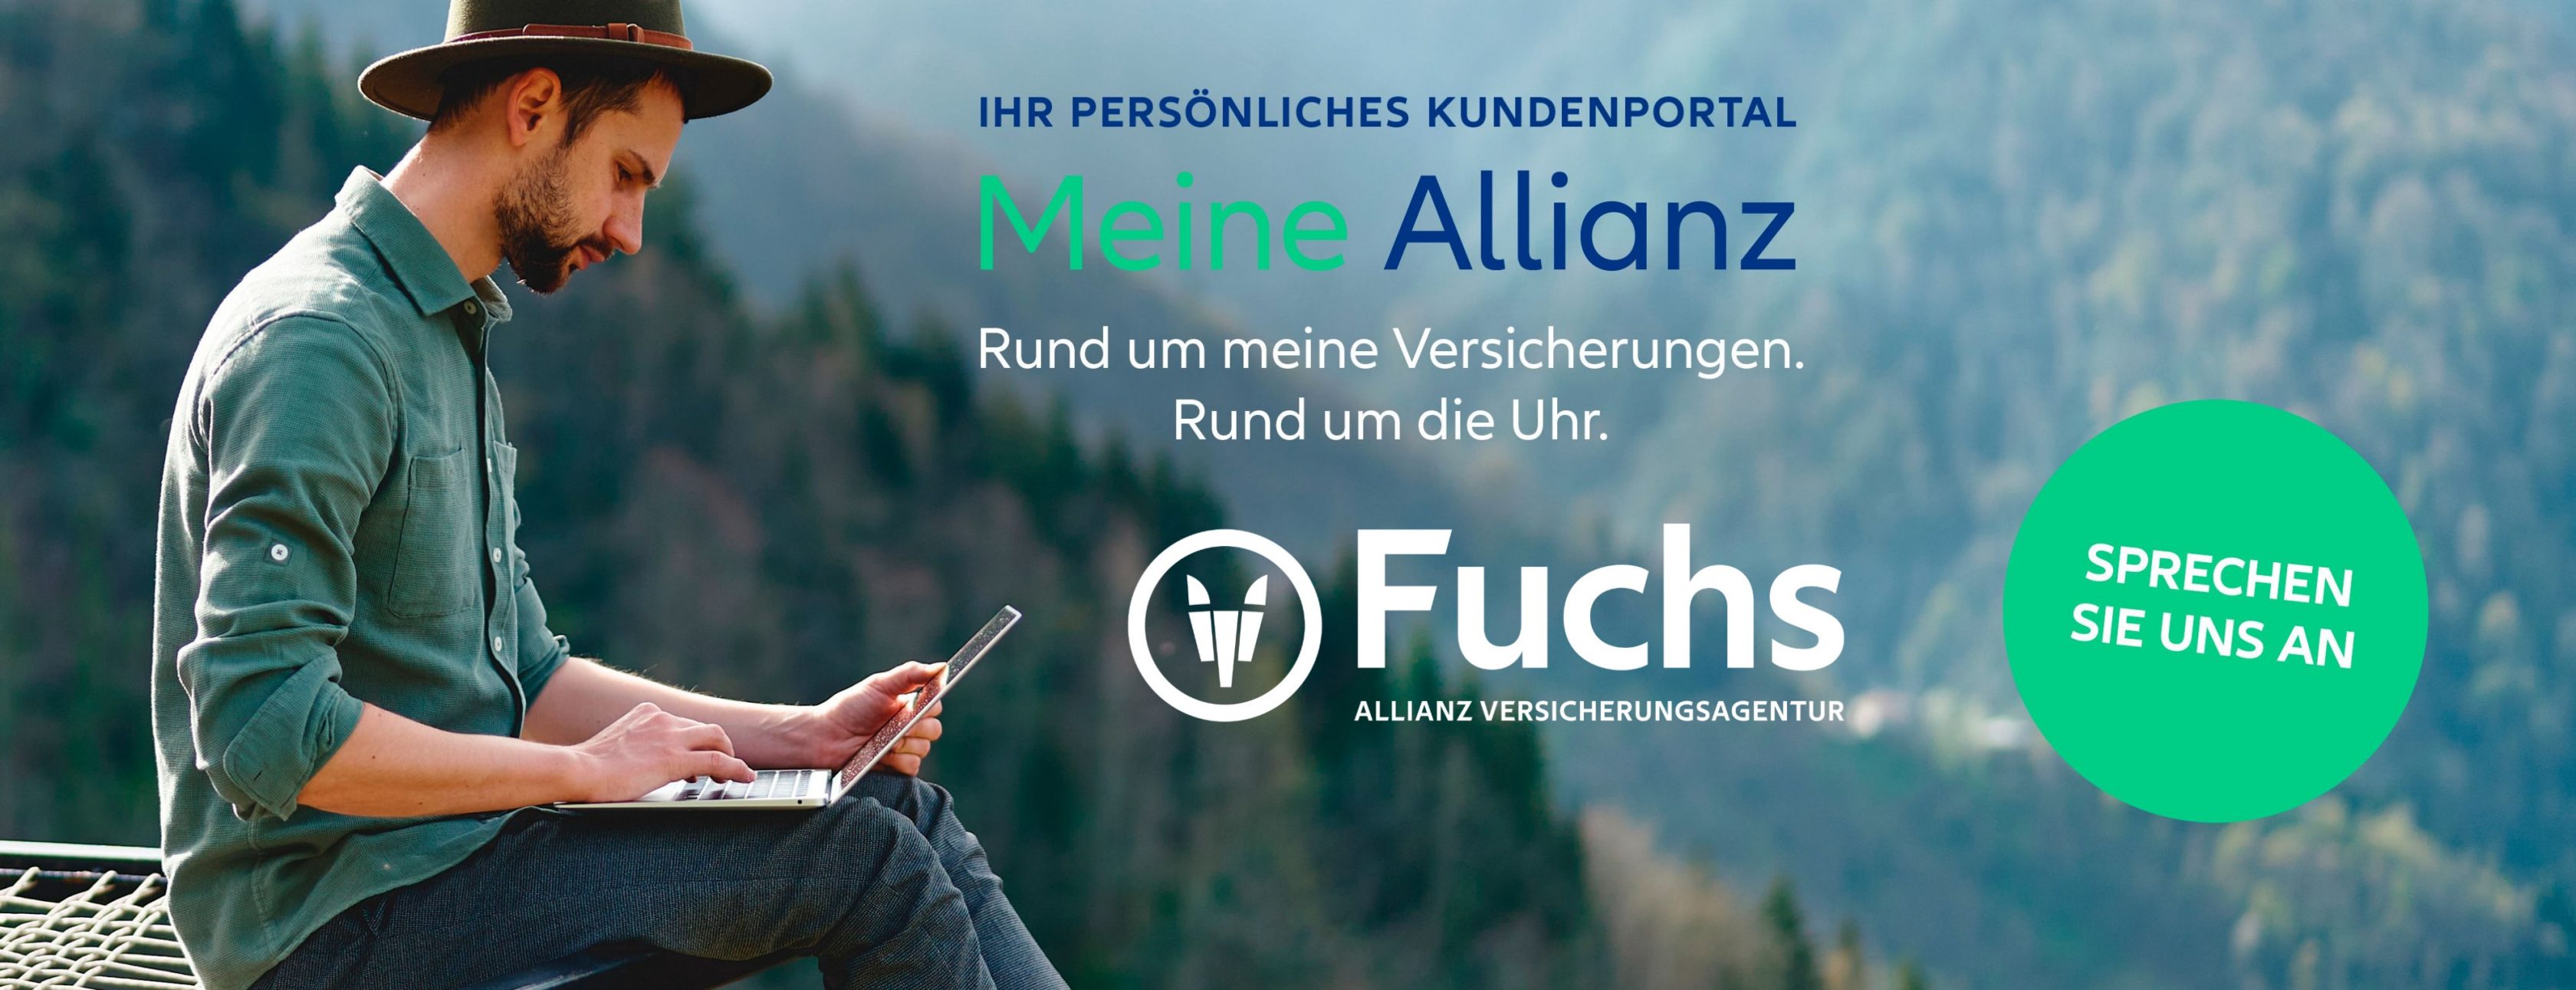 Allianz Versicherung Andre Fuchs Oberau - Meine Allianz Versicherung 82496 Oberau Fuchs